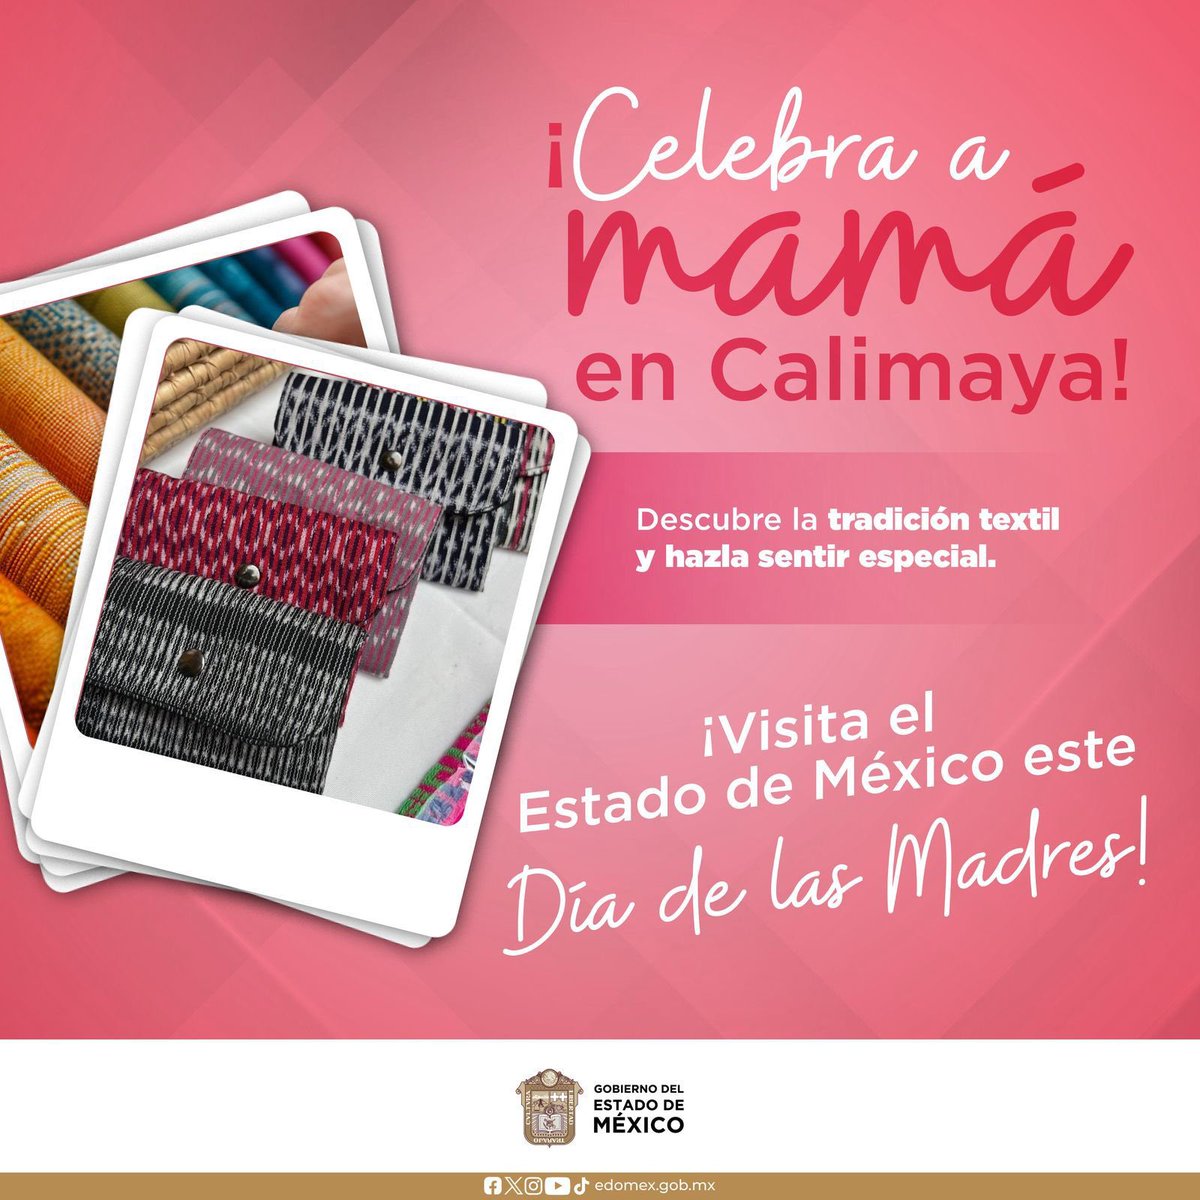 En este #DíaDeLasMadres descubre la riqueza textil de nuestro #EstadoDeMéxico, visita Calimaya y otros municipios que te ofrecen prendas de la más alta calidad para mamá.